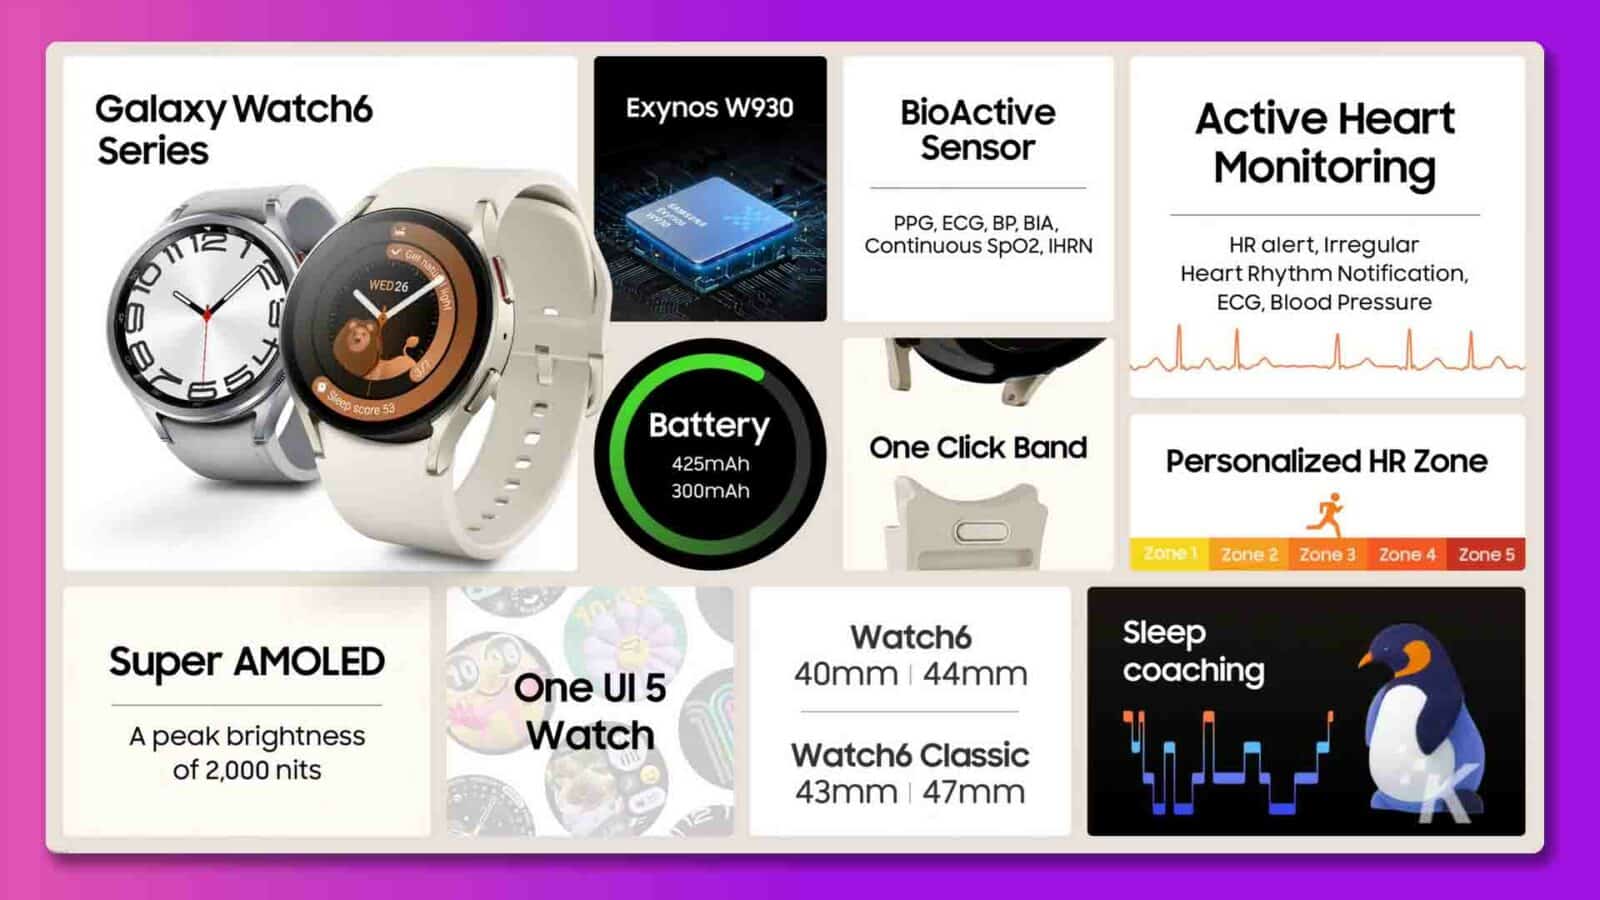 この画像は、センサー、バッテリー寿命、ディスプレイ、睡眠追跡機能など、Samsung Galaxy Watch6 の機能を示しています。全文: Galaxy Watch6 Exynos W930 BioActive アクティブ ハート シリーズ センサー モニタリング SAMSUNG PPG、ECG、BP、BIA、継続的 SpO2、IHRN HR アラート、不規則性 0 心拍リズム通知、WED26 ligh ECG、血圧 1 ステップ スコア 53 バッテリー ワン クリック バンド425mAh パーソナライズされた HR ゾーン 300mAh ゾーン 1 ゾーン 2 ゾーン 3 ゾーン 4 ゾーン 5 スーパー AMOLED Watch6 スリープ ワン UI 5 40mm | 44mm コーチング 最高輝度 2,000 nits の時計 Watch6 Classic 43mm | 47mm